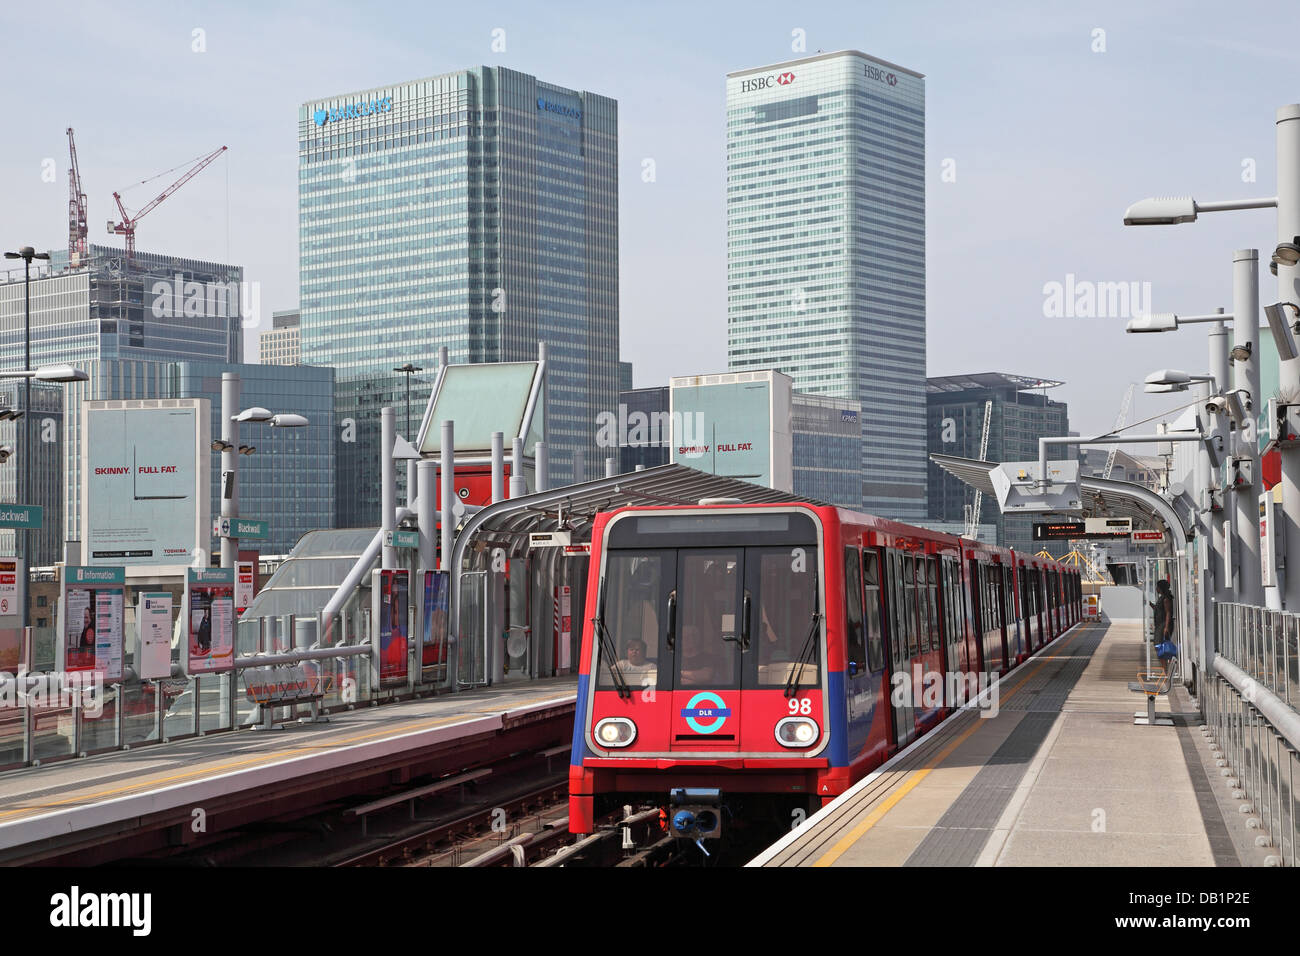 Ein London Docklands Light Railway Zug kommt an Pappel-Station mit dem Geschäftsviertel Canary Wharf im Hintergrund. Stockfoto